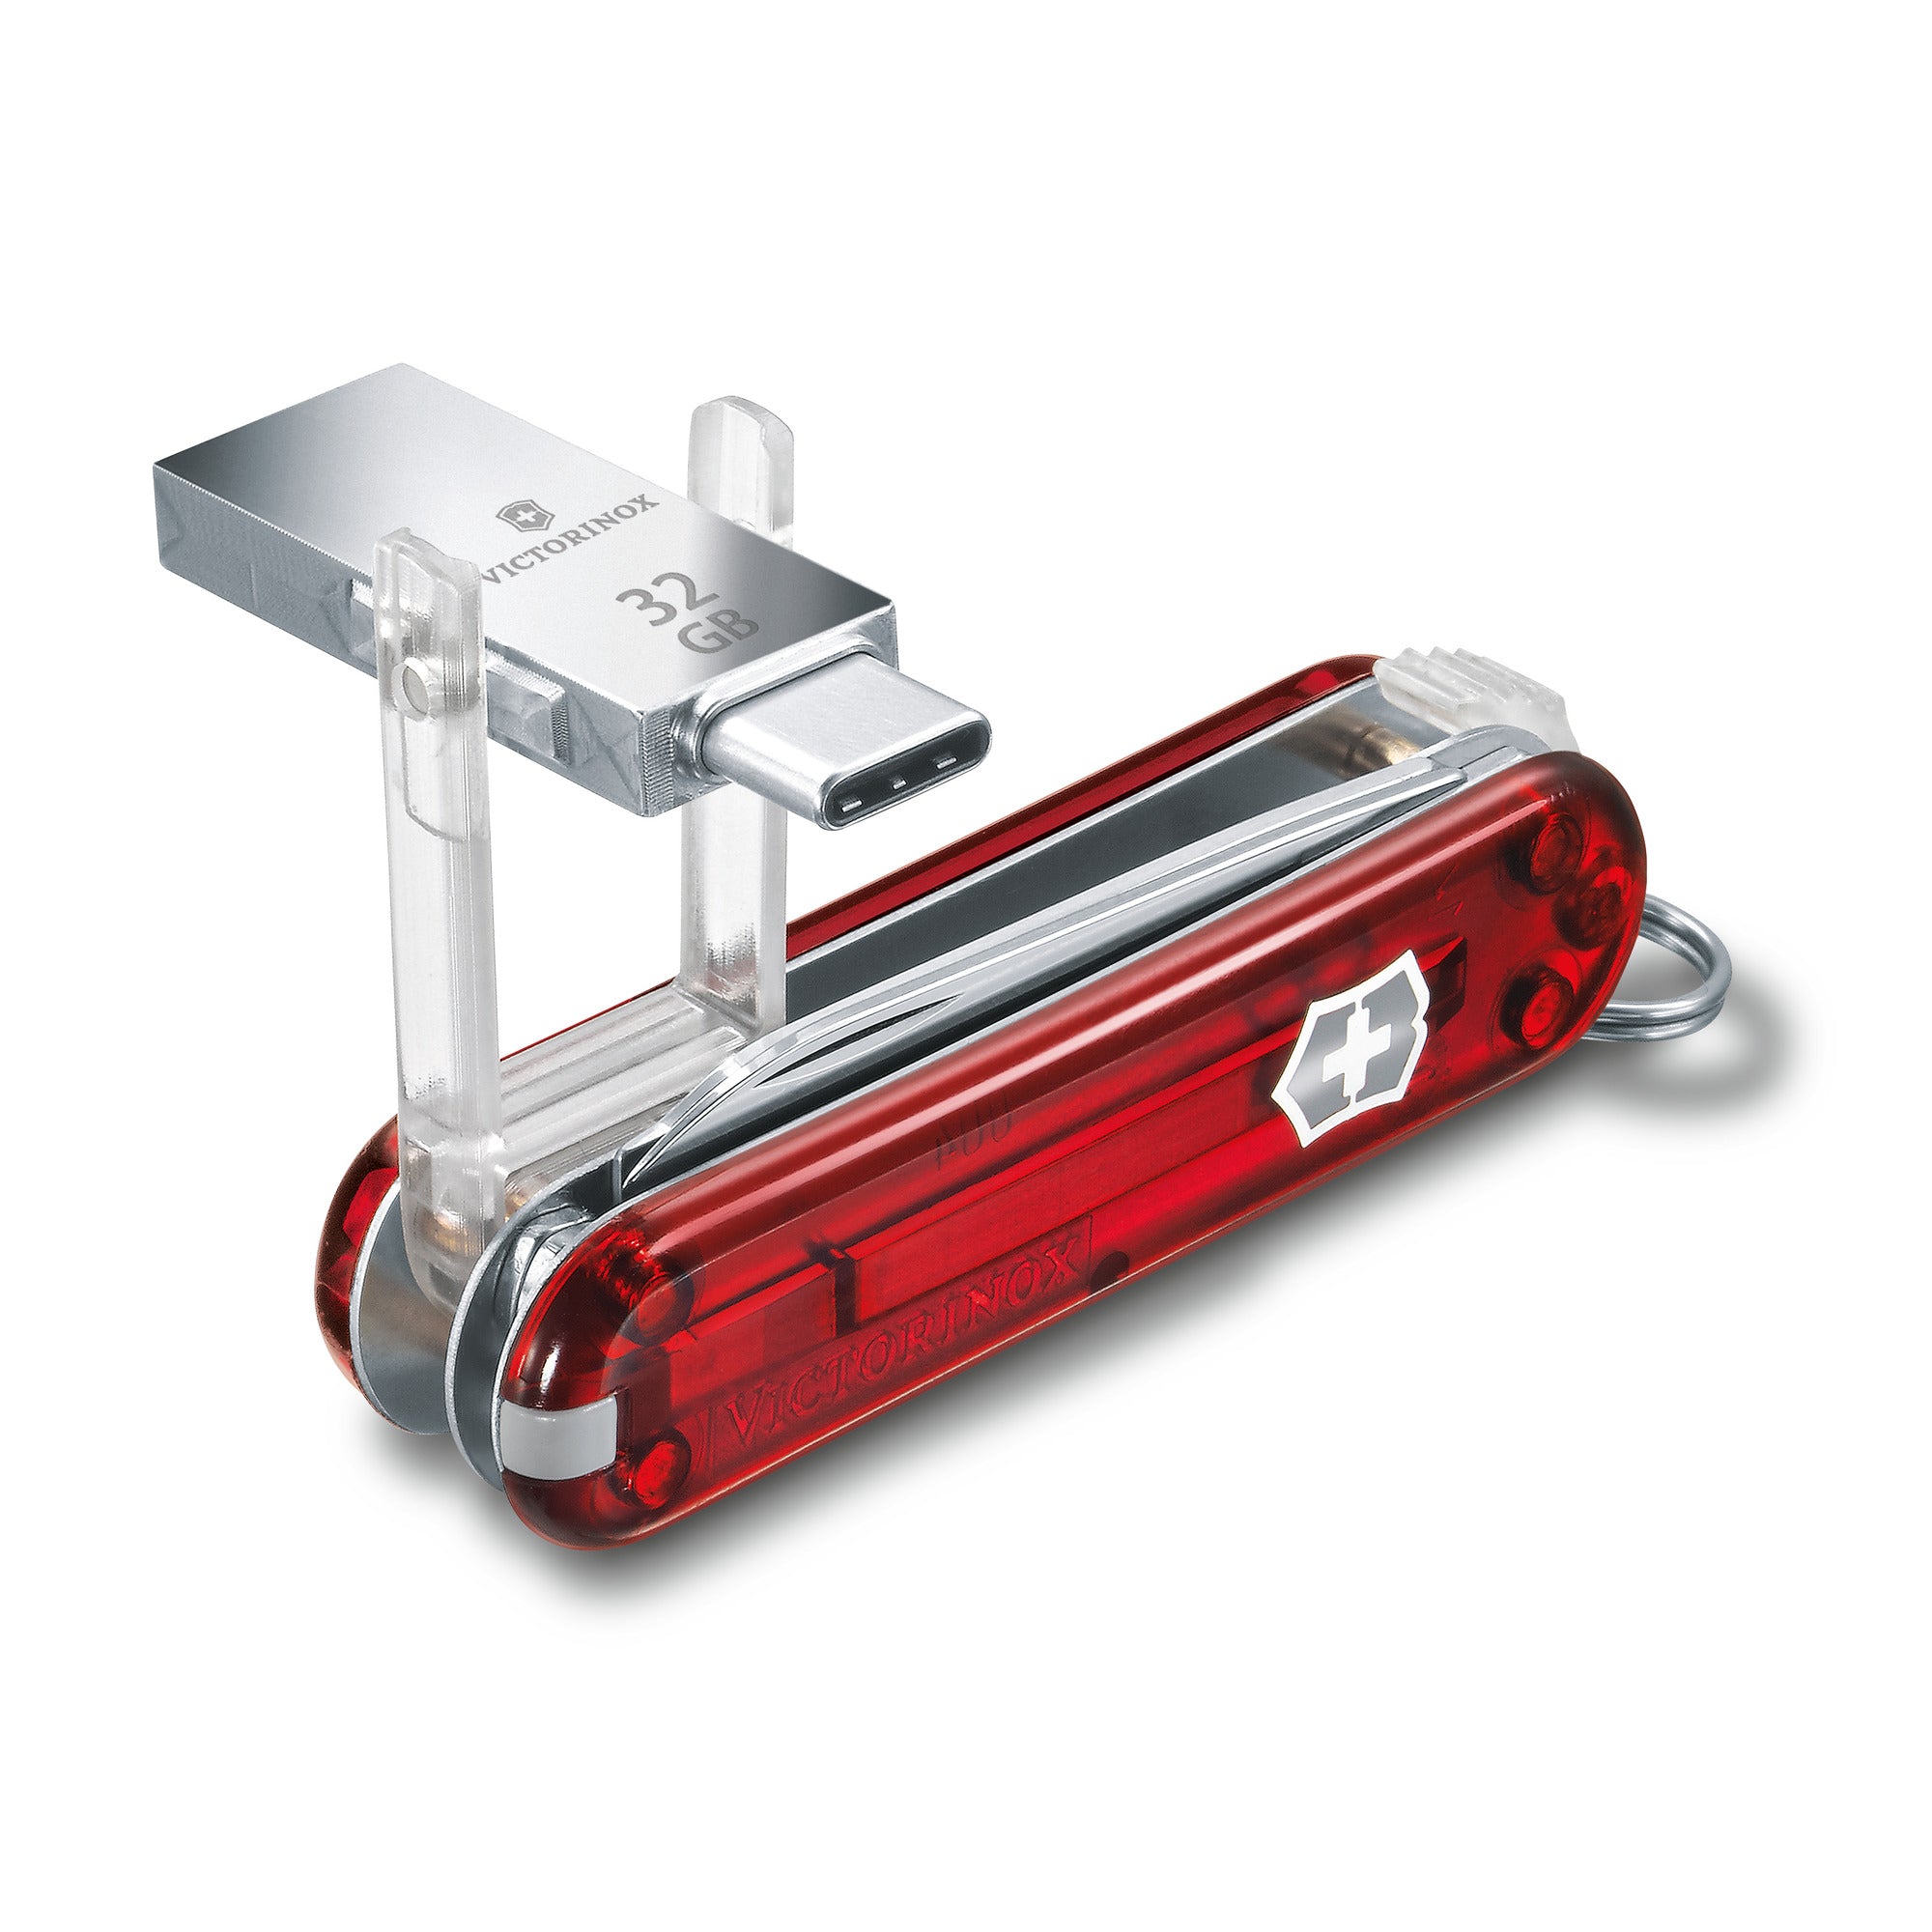 Victorinox tiene navajas USB con protección y evolucionada a puntero láser